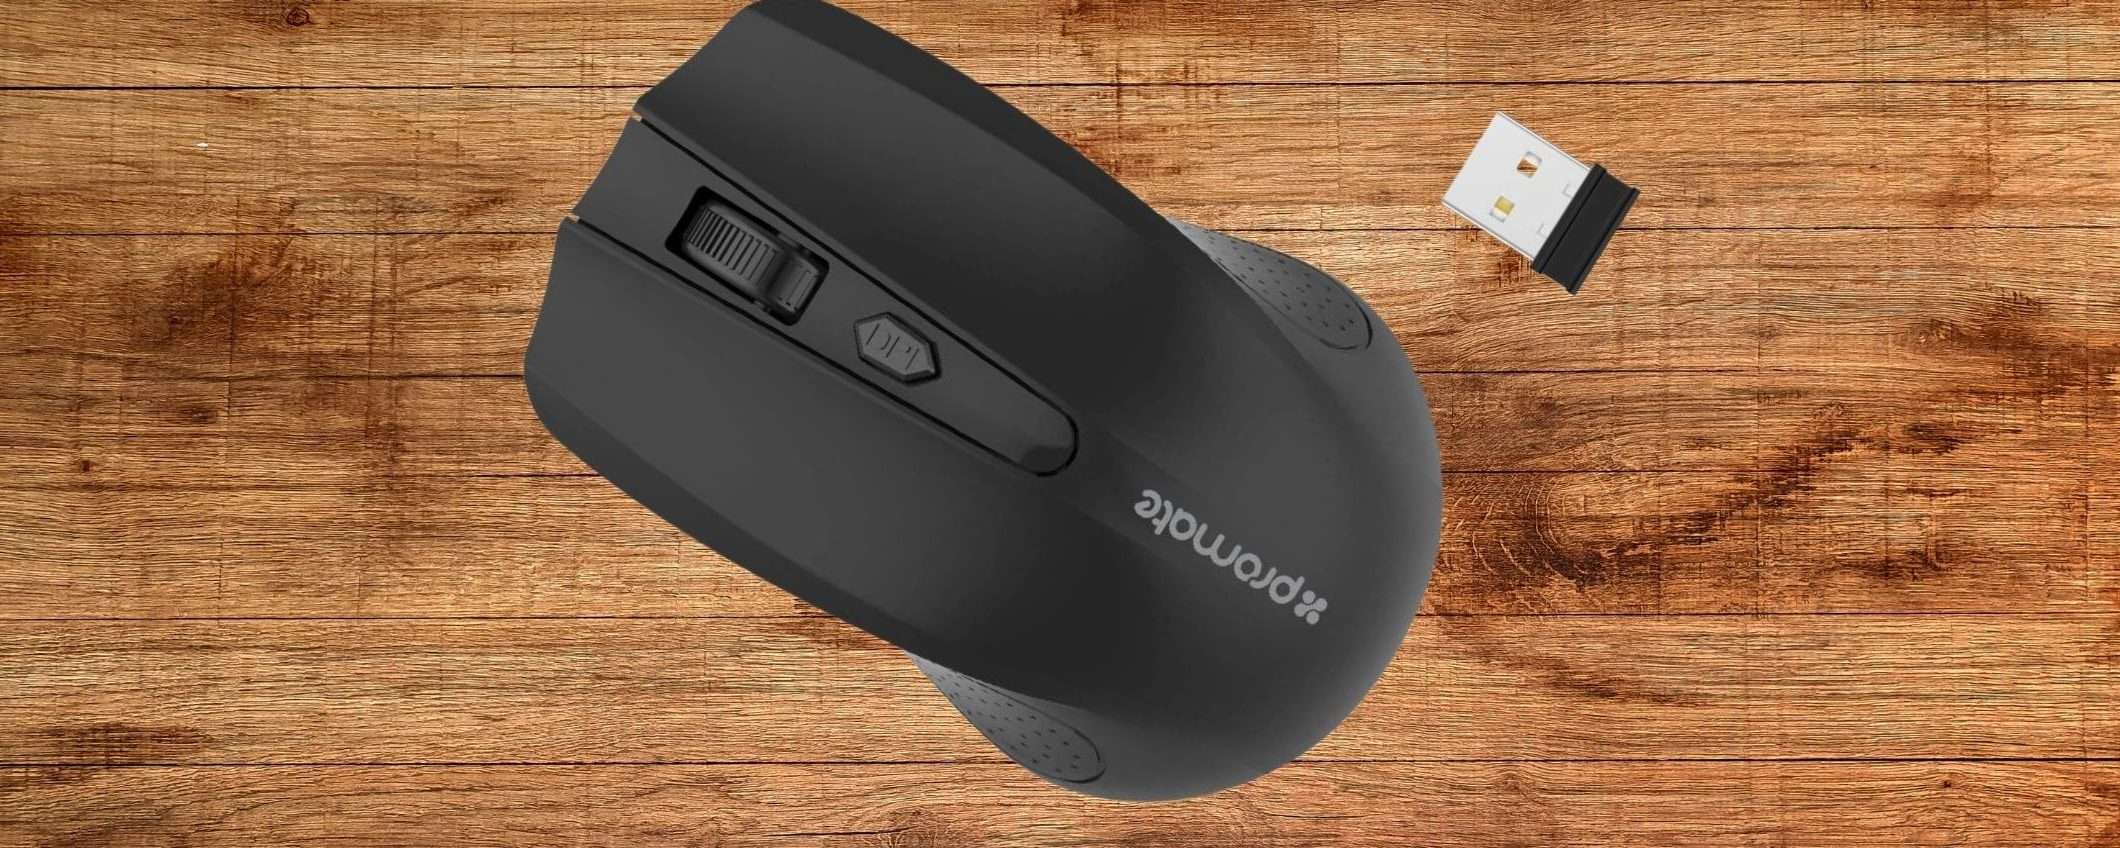 Mouse wireless a 5€, su Amazon è tutto possibile (spedizioni gratis)